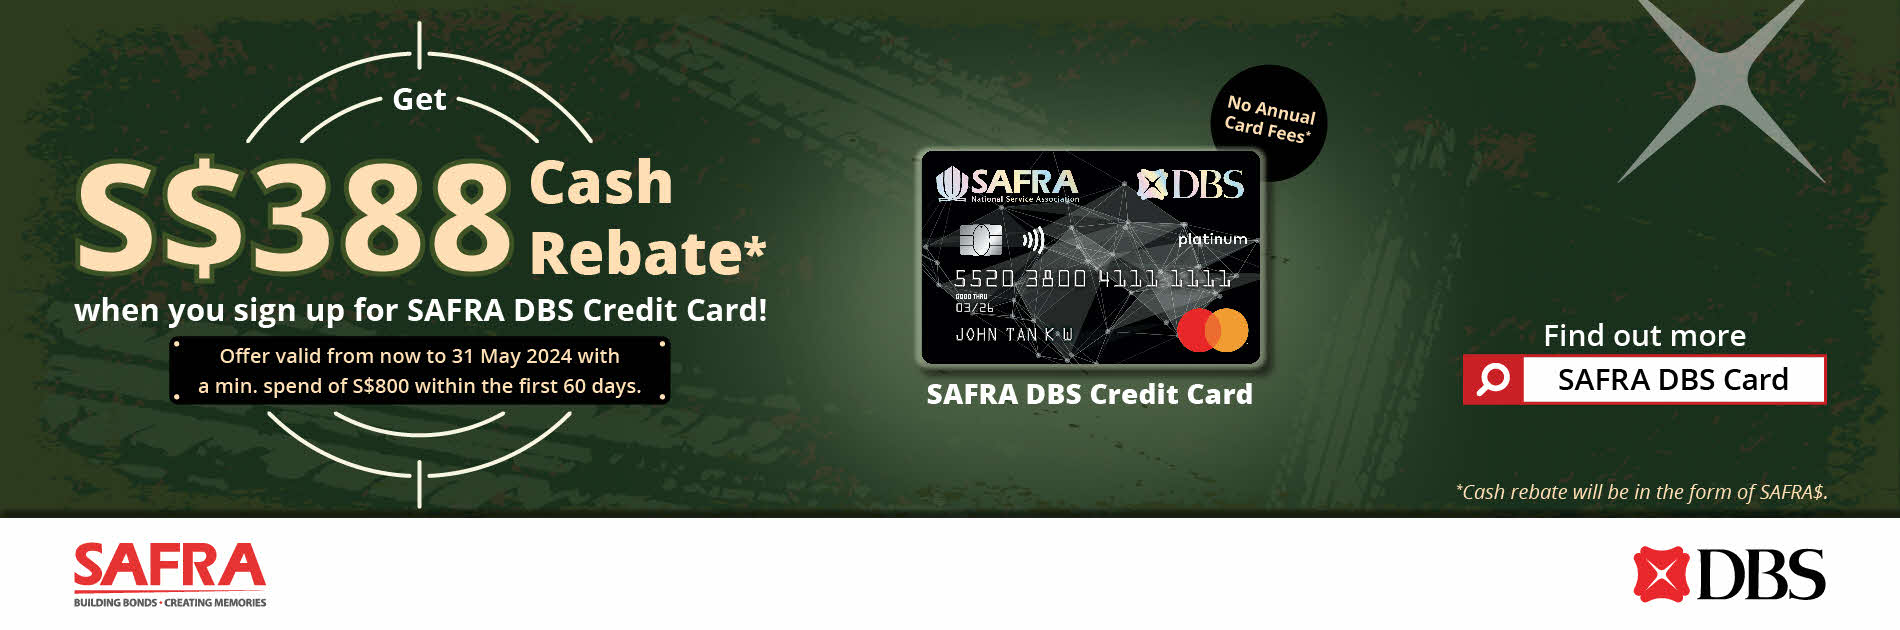 DBS Credit Card 388 Deal